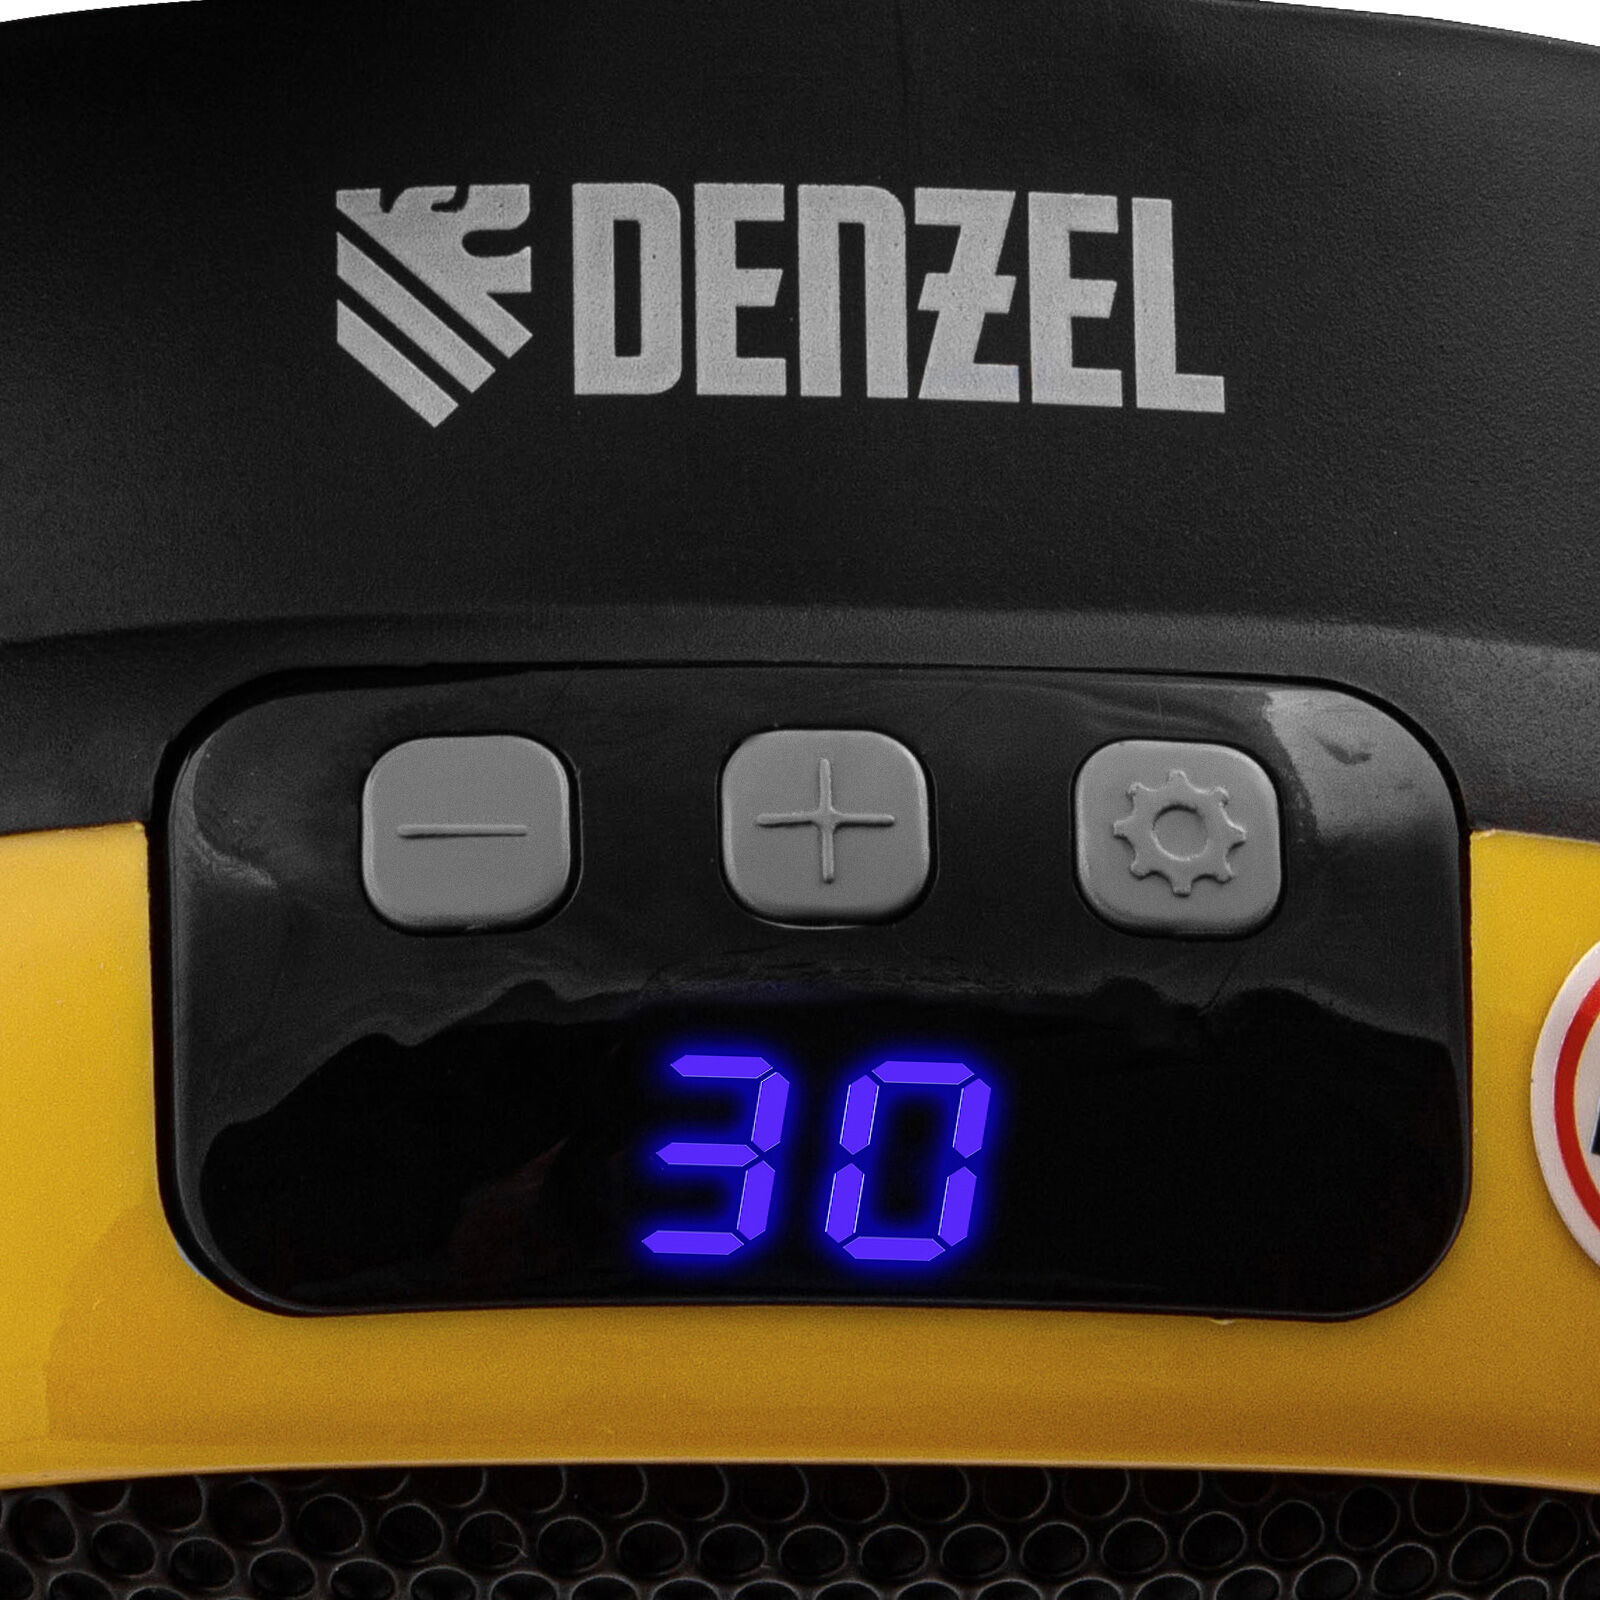 Тепловентилятор портативный керамический DTFC-700, 3 реж. вентилятор, нагрев 700 Вт // Denzel 12